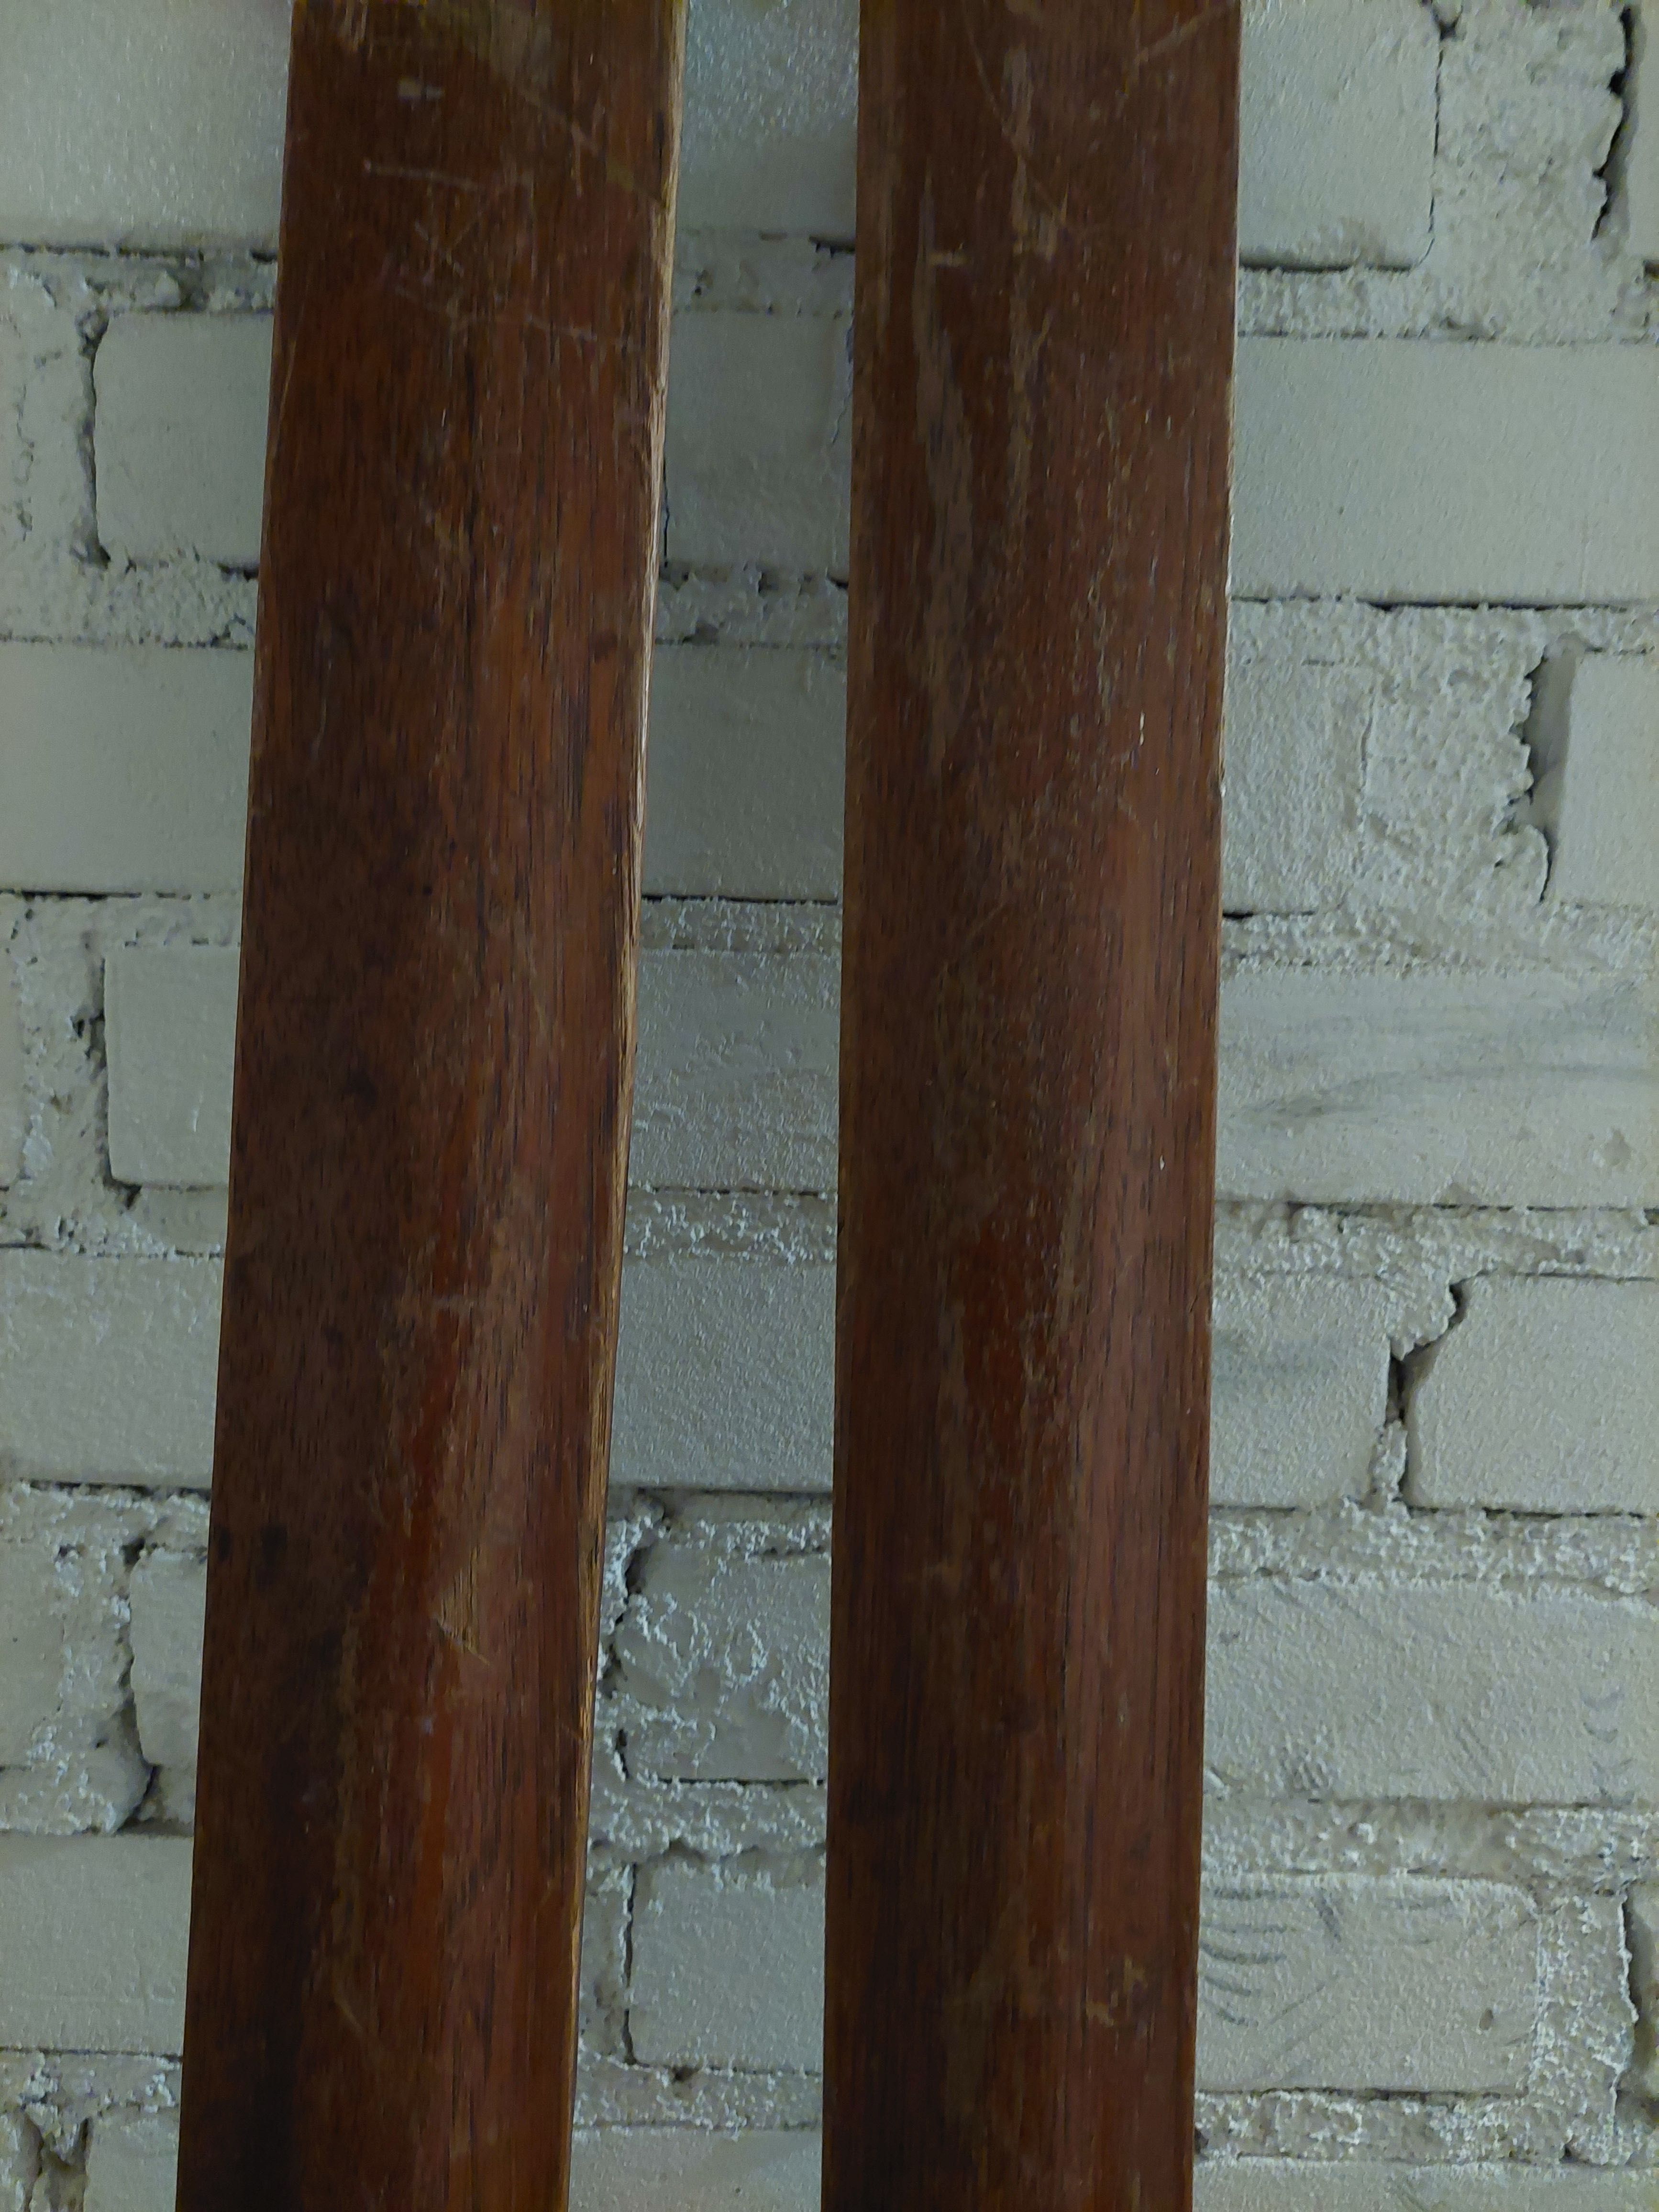 Zabytkowe narty firmy Karhu 210 cm wraz z kijkami